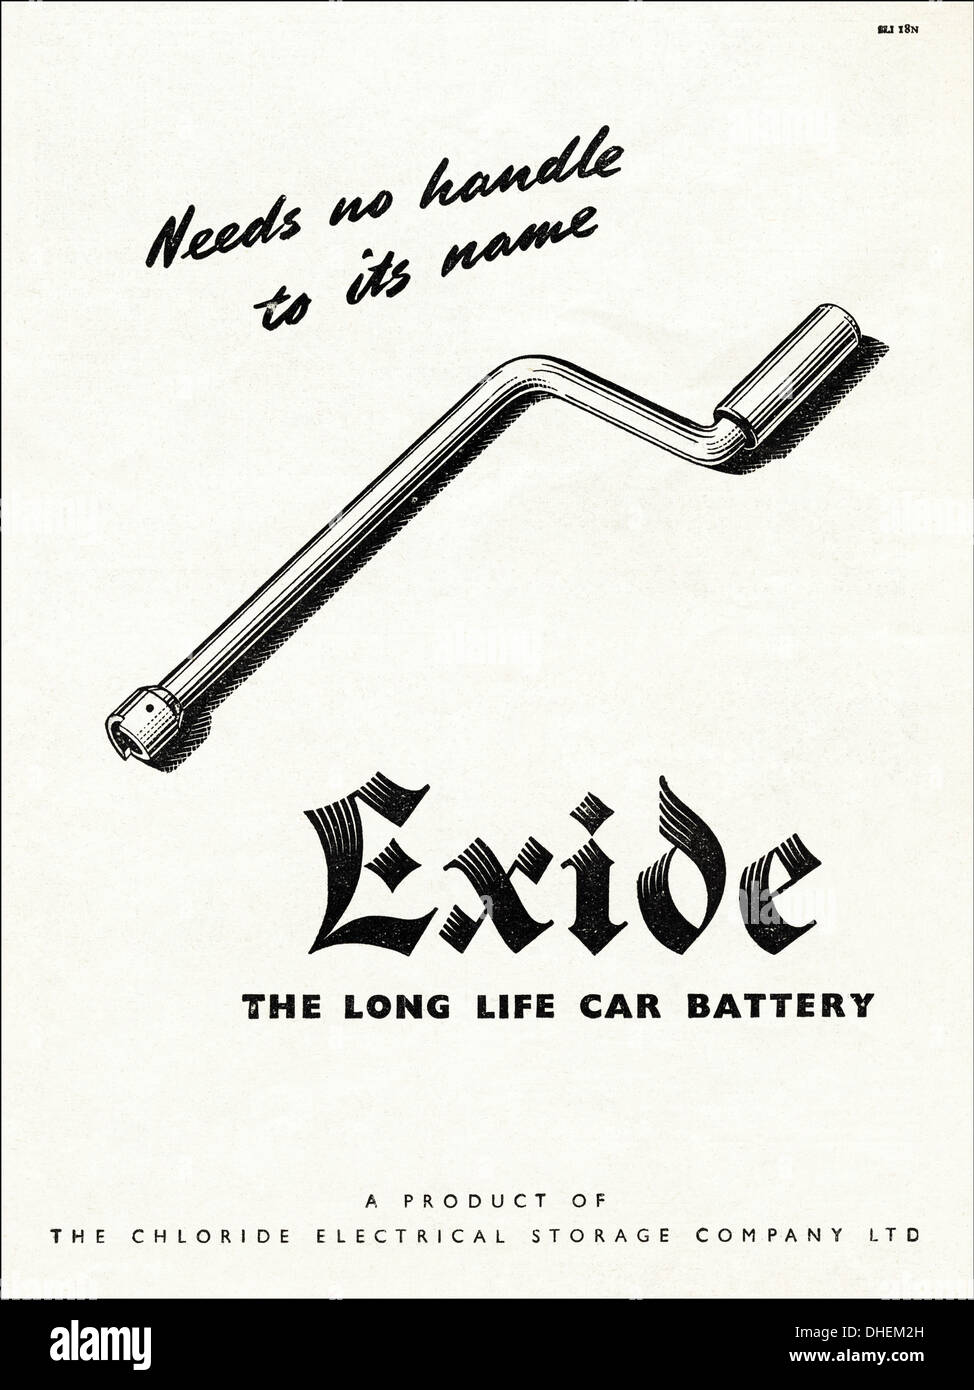 Werbung Werbung EXIDE Autobatterie Autofahren Magazin Anzeige ca. 1947  Stockfotografie - Alamy